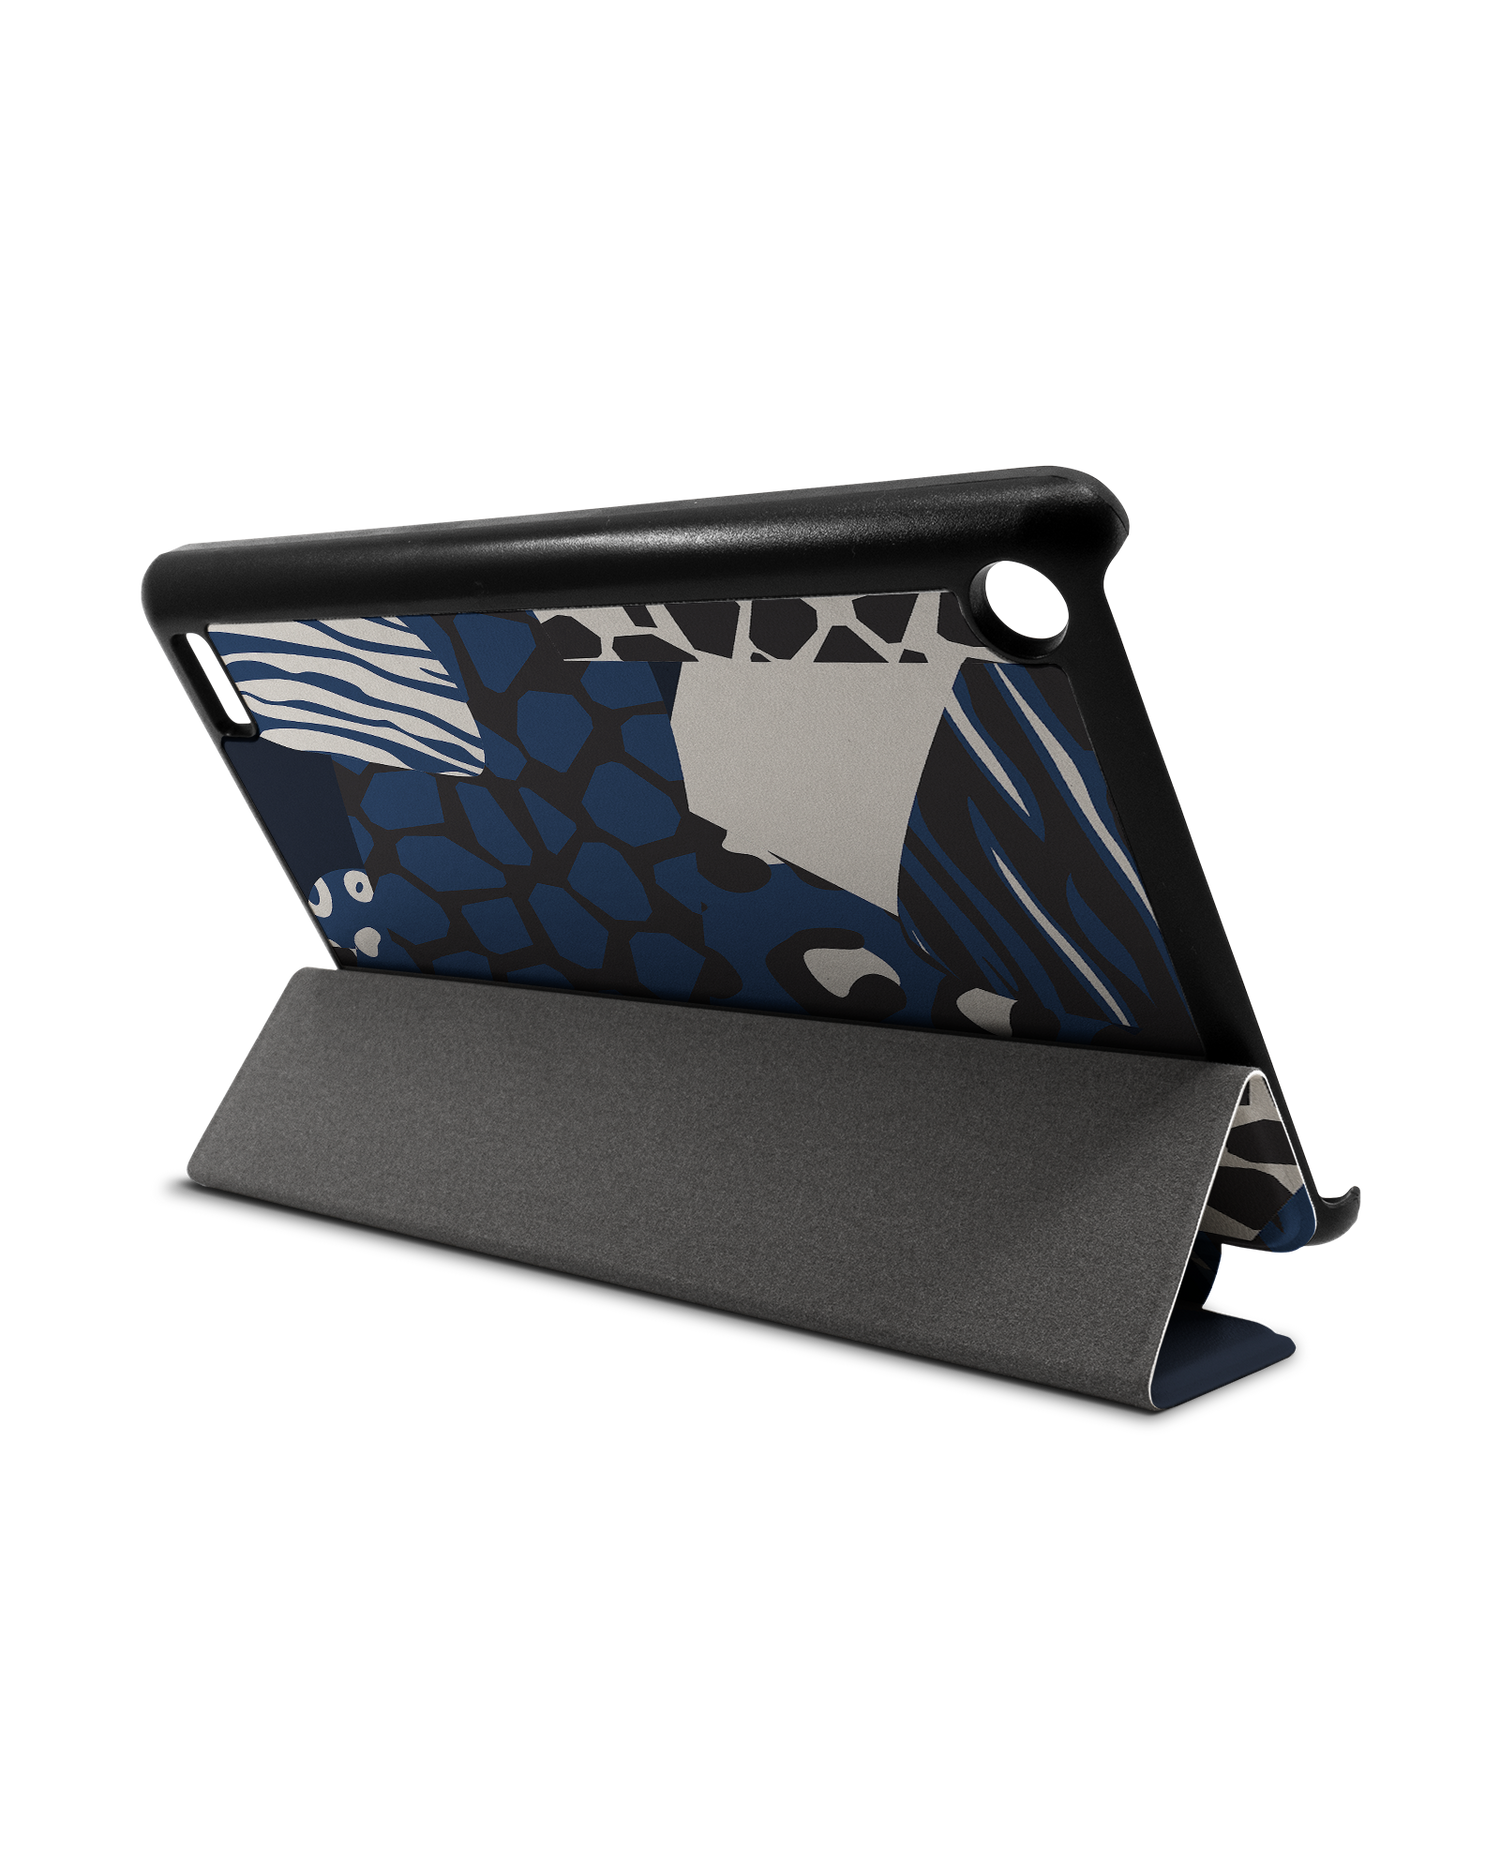 Animal Print Patchwork Tablet Smart Case für Amazon Fire 7: Aufgestellt im Querformat